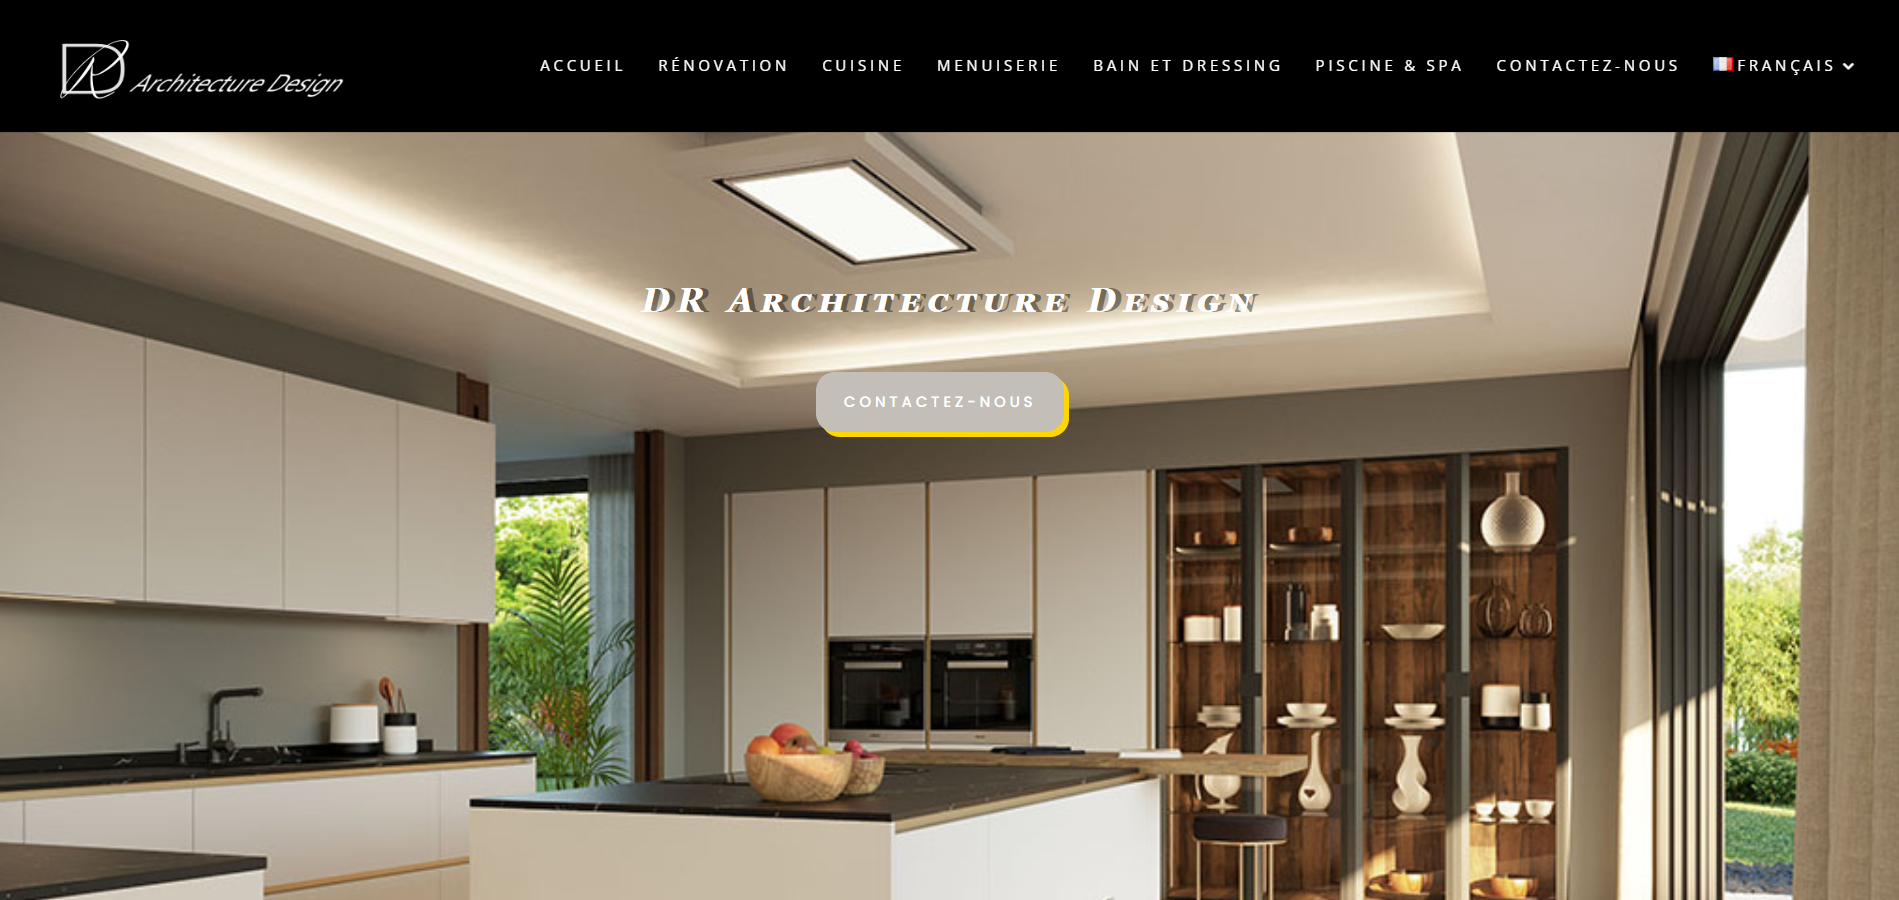 DR Architecure Design